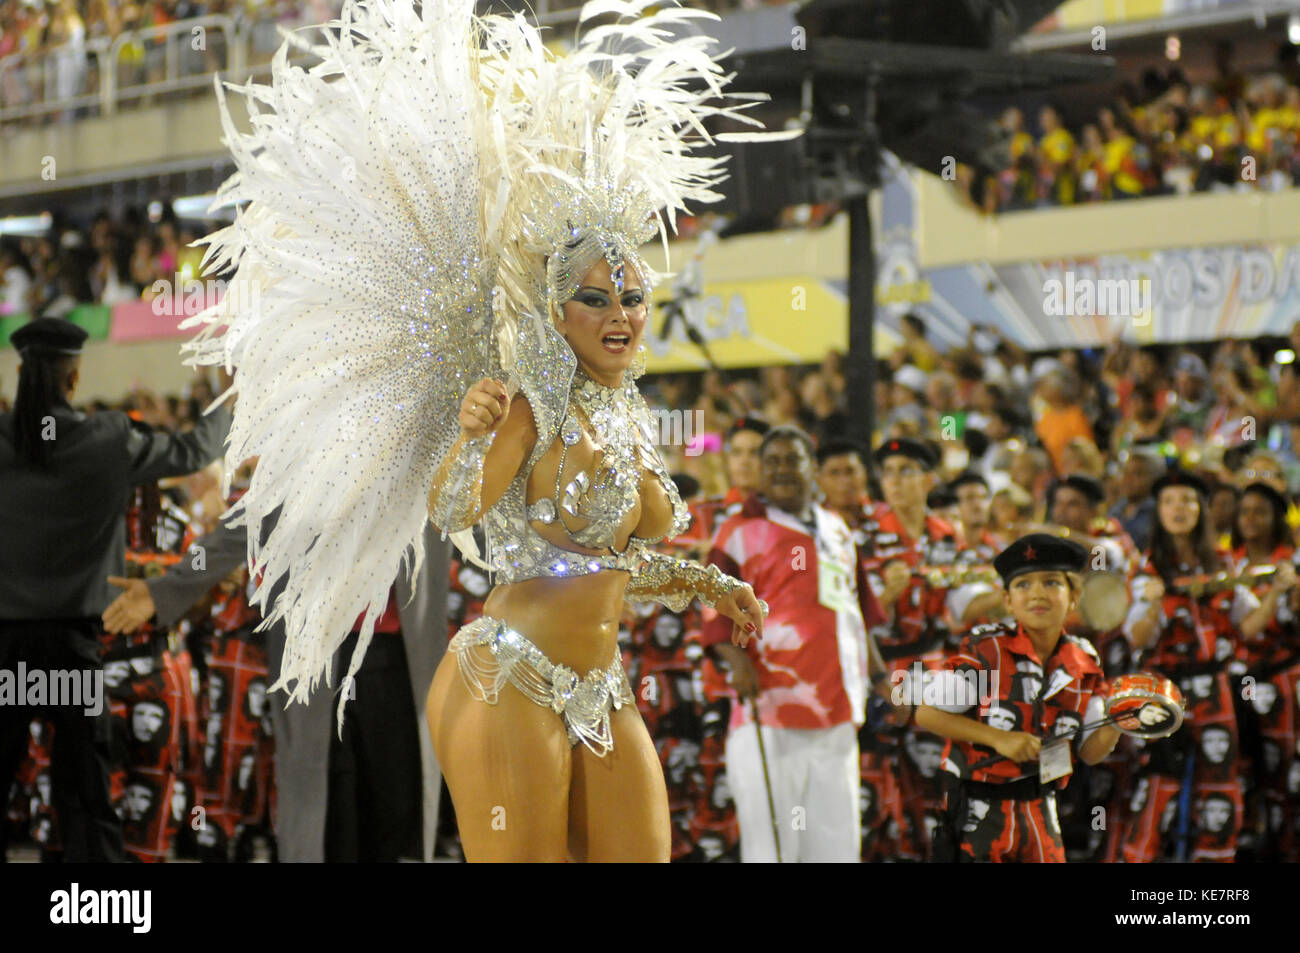 Rio de Janeiro, Brésil - le 10 février 2013 : l'école de samba salgueiro rio à effectuer à marques de sapucai appelé sambódromo, pour le carnaval samba pa Banque D'Images